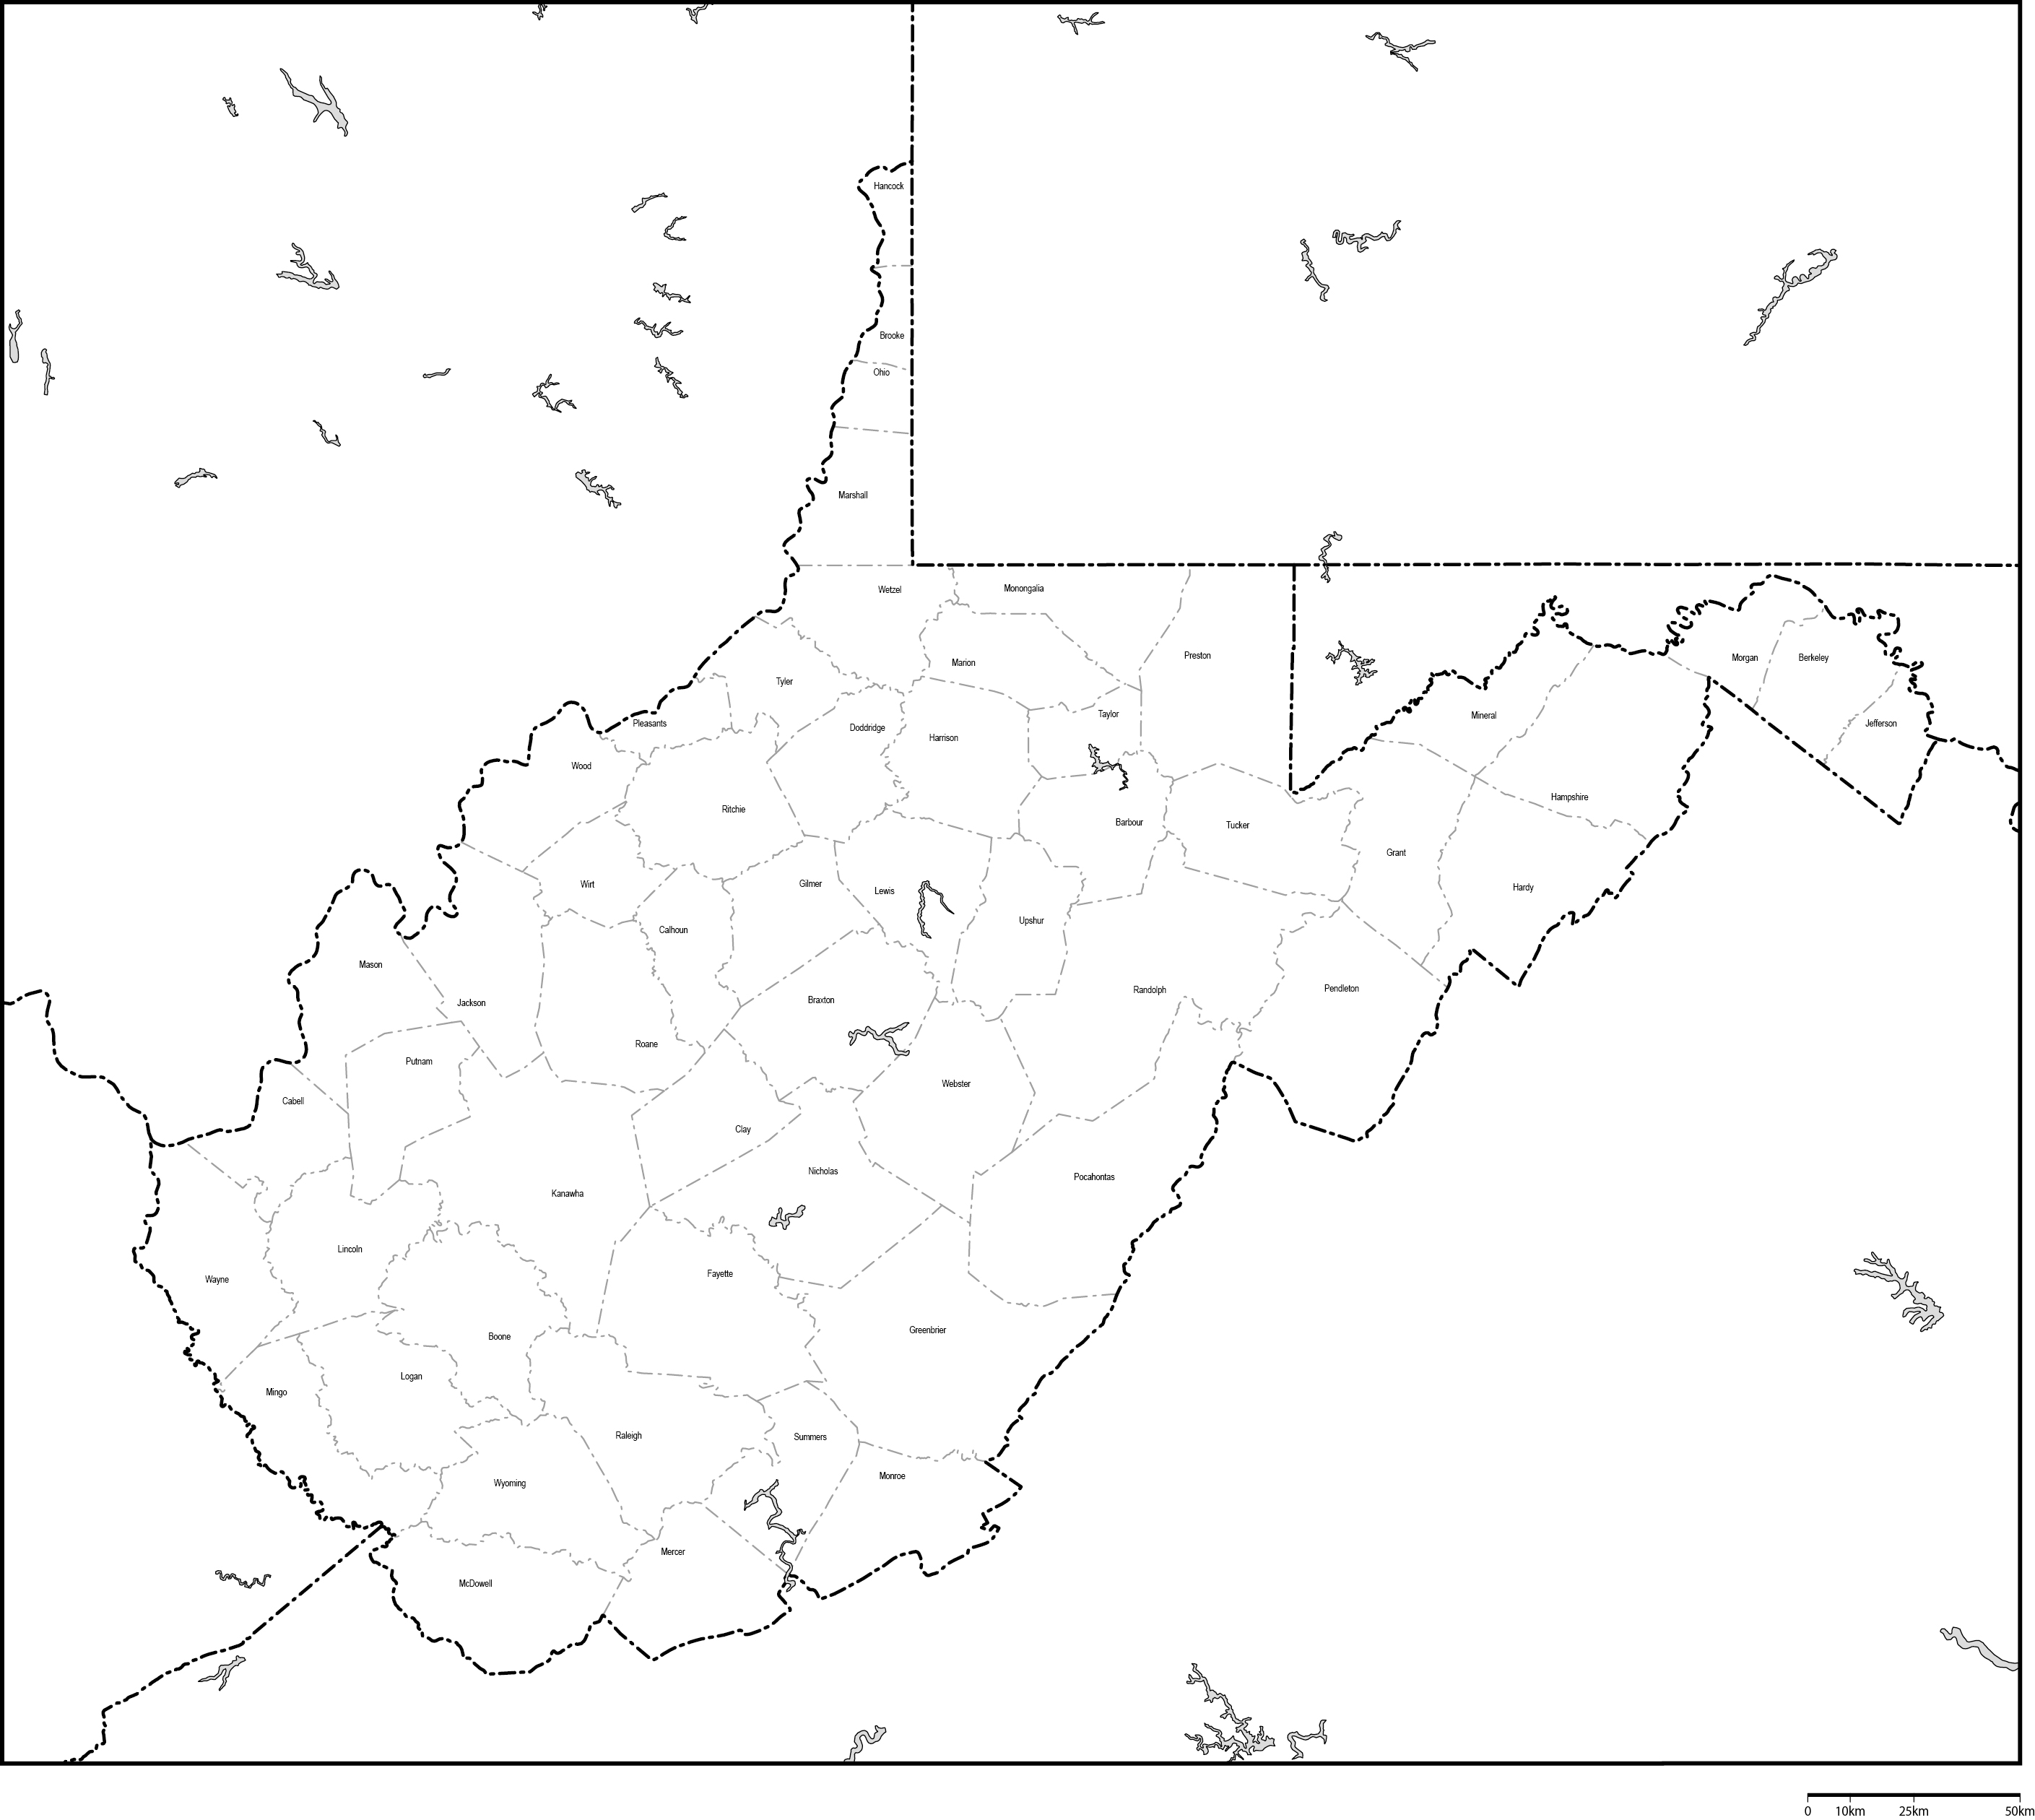 ウェストバージニア州郡分け白地図郡名あり(英語)フリーデータの画像